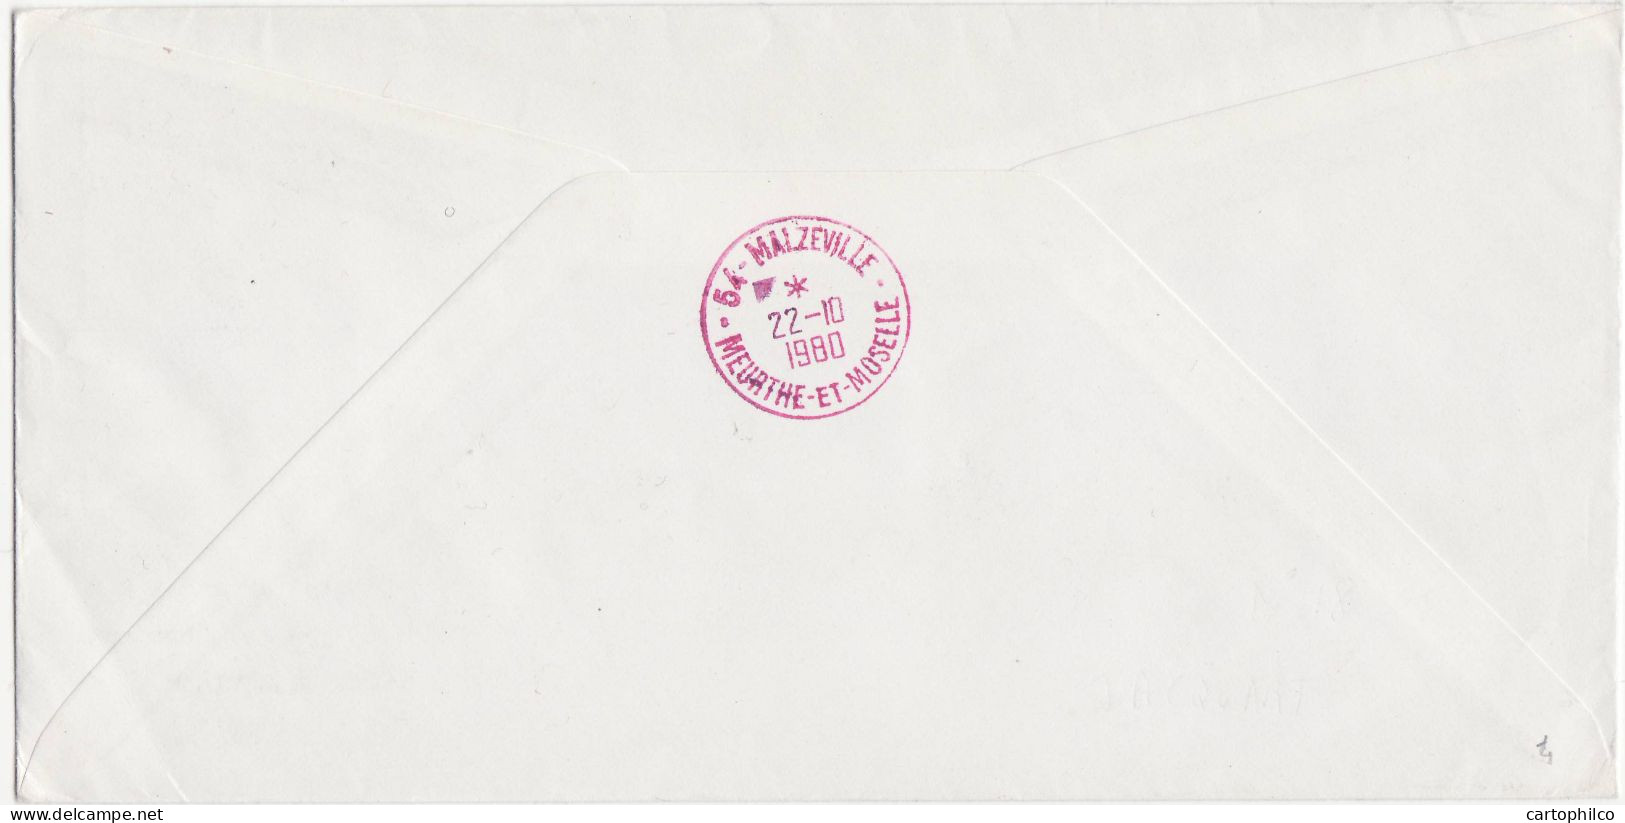 'TAAF Lettre Marion Dufresne MArtin De Vivies ST Paul 10 10 1980 Pour Malzeville Amiral D''Entrecosteaux' - Covers & Documents